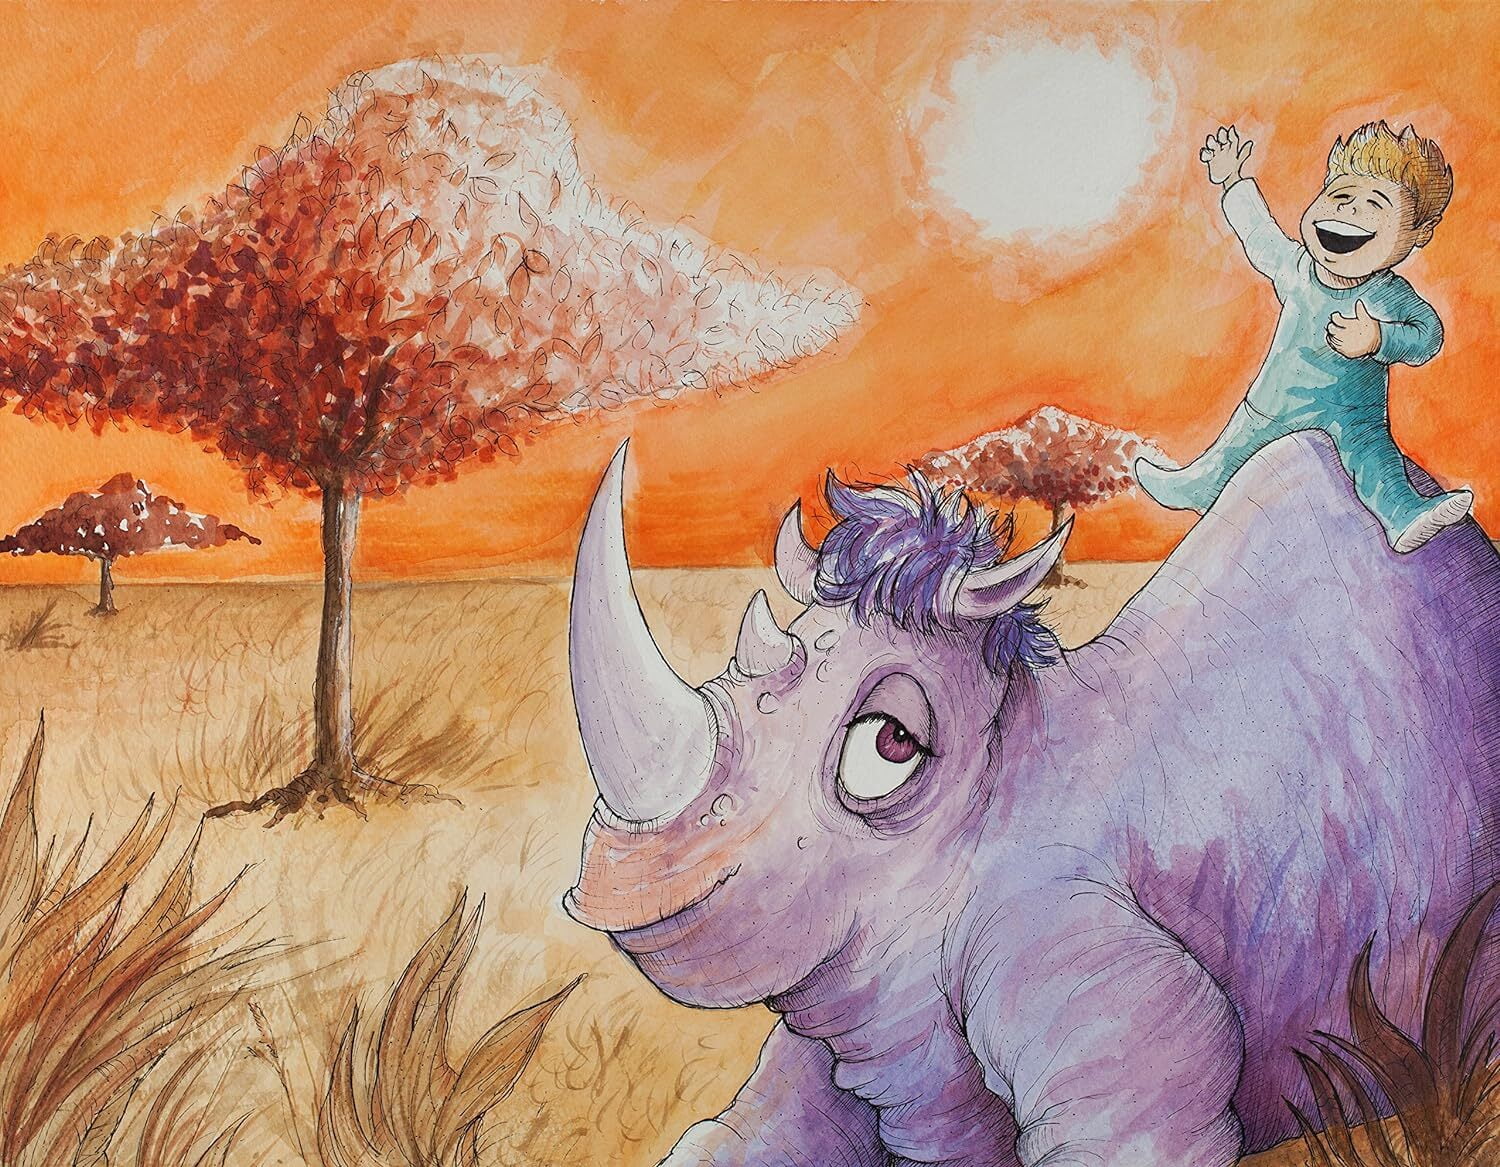 On Purple Rhinoceroses